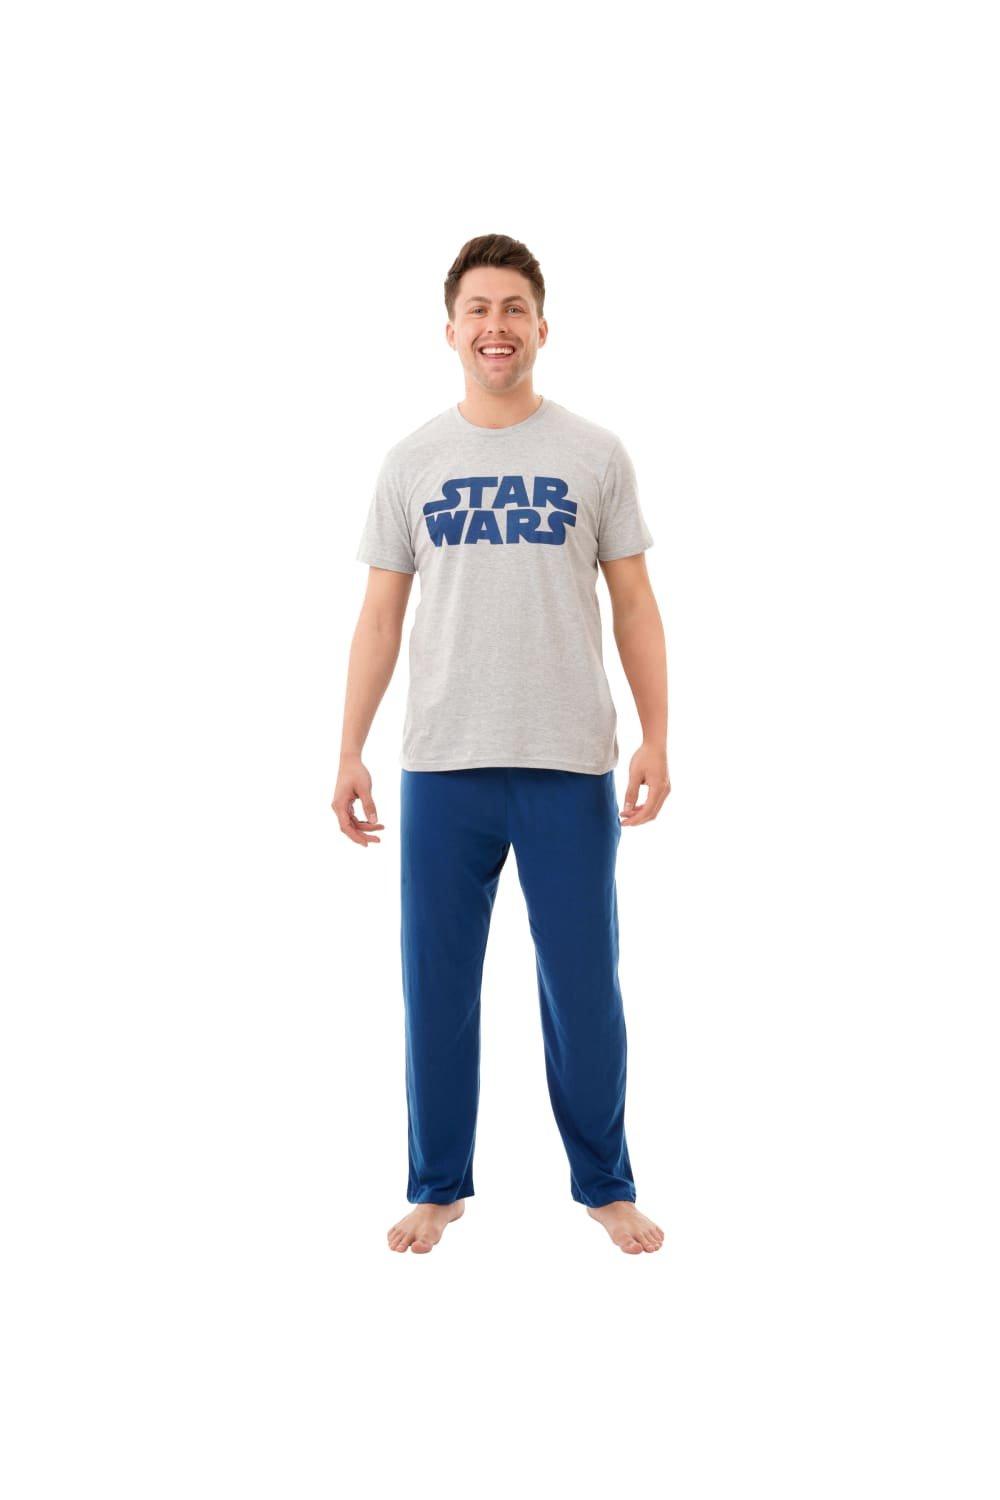 Galactic Empire Pyjamas